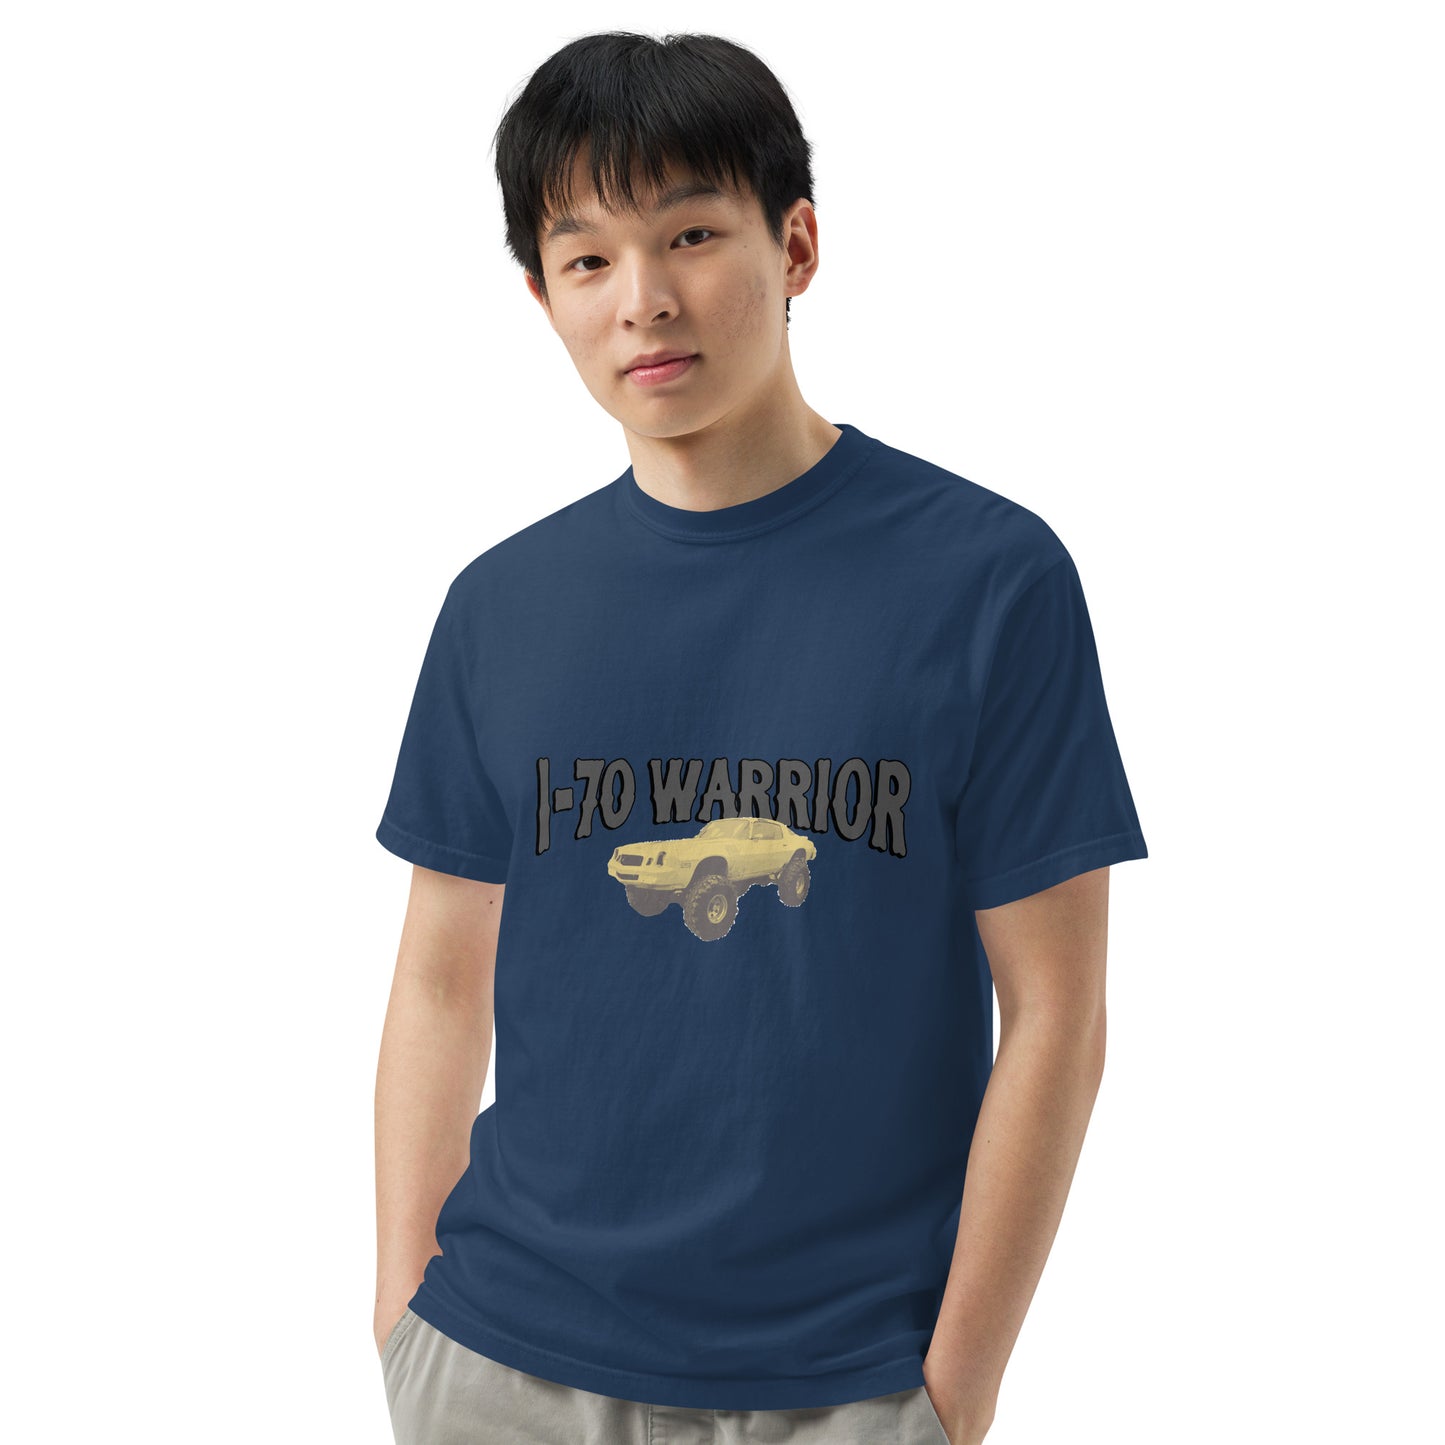 I-70 Georgetown Yellow Camaro Warrior T-Shirt